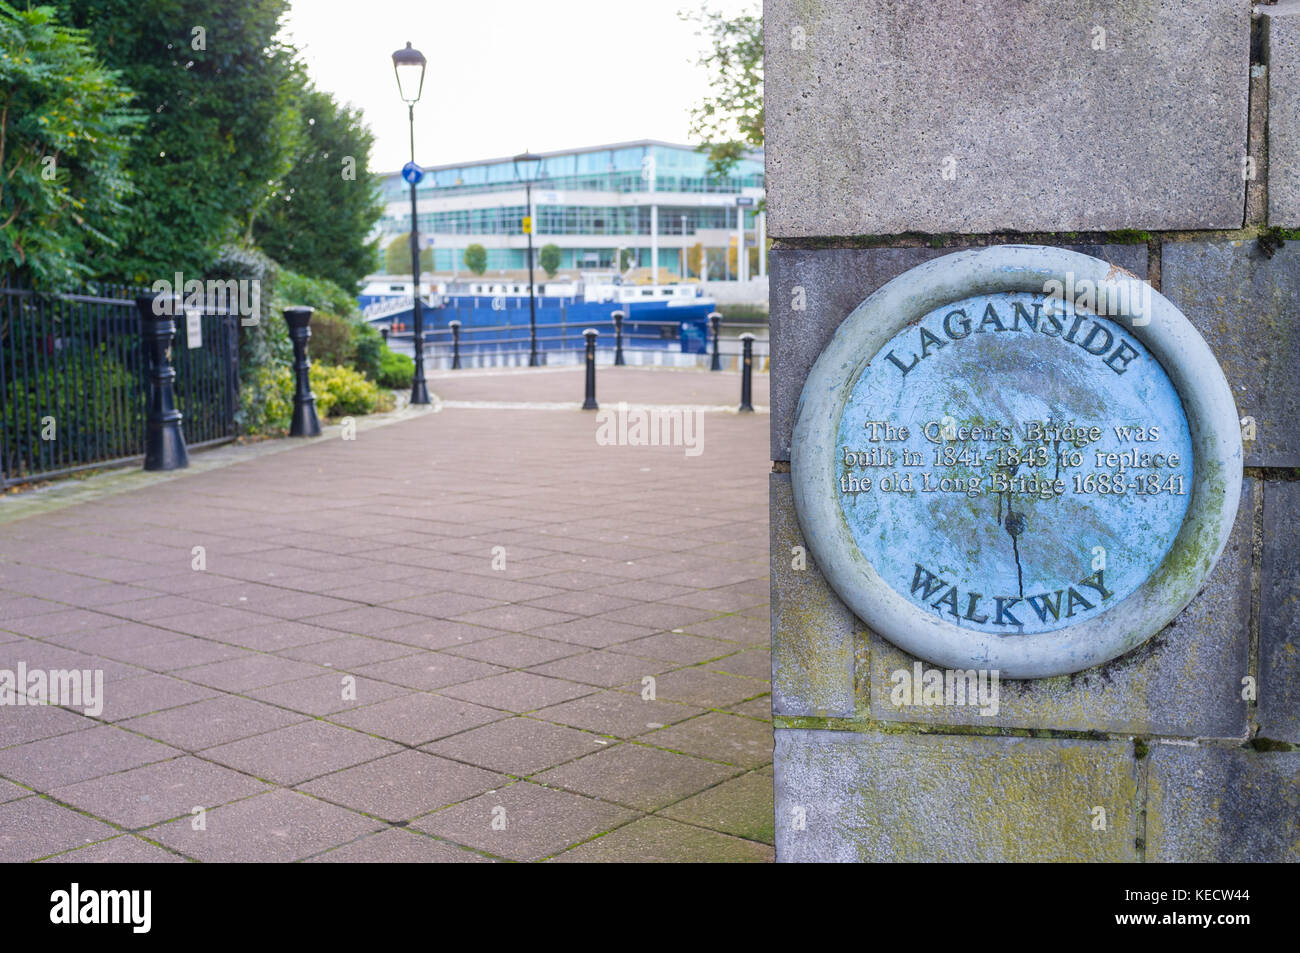 Laaganside walkway plaque at Queens Bridge, Belfast Stock Photo